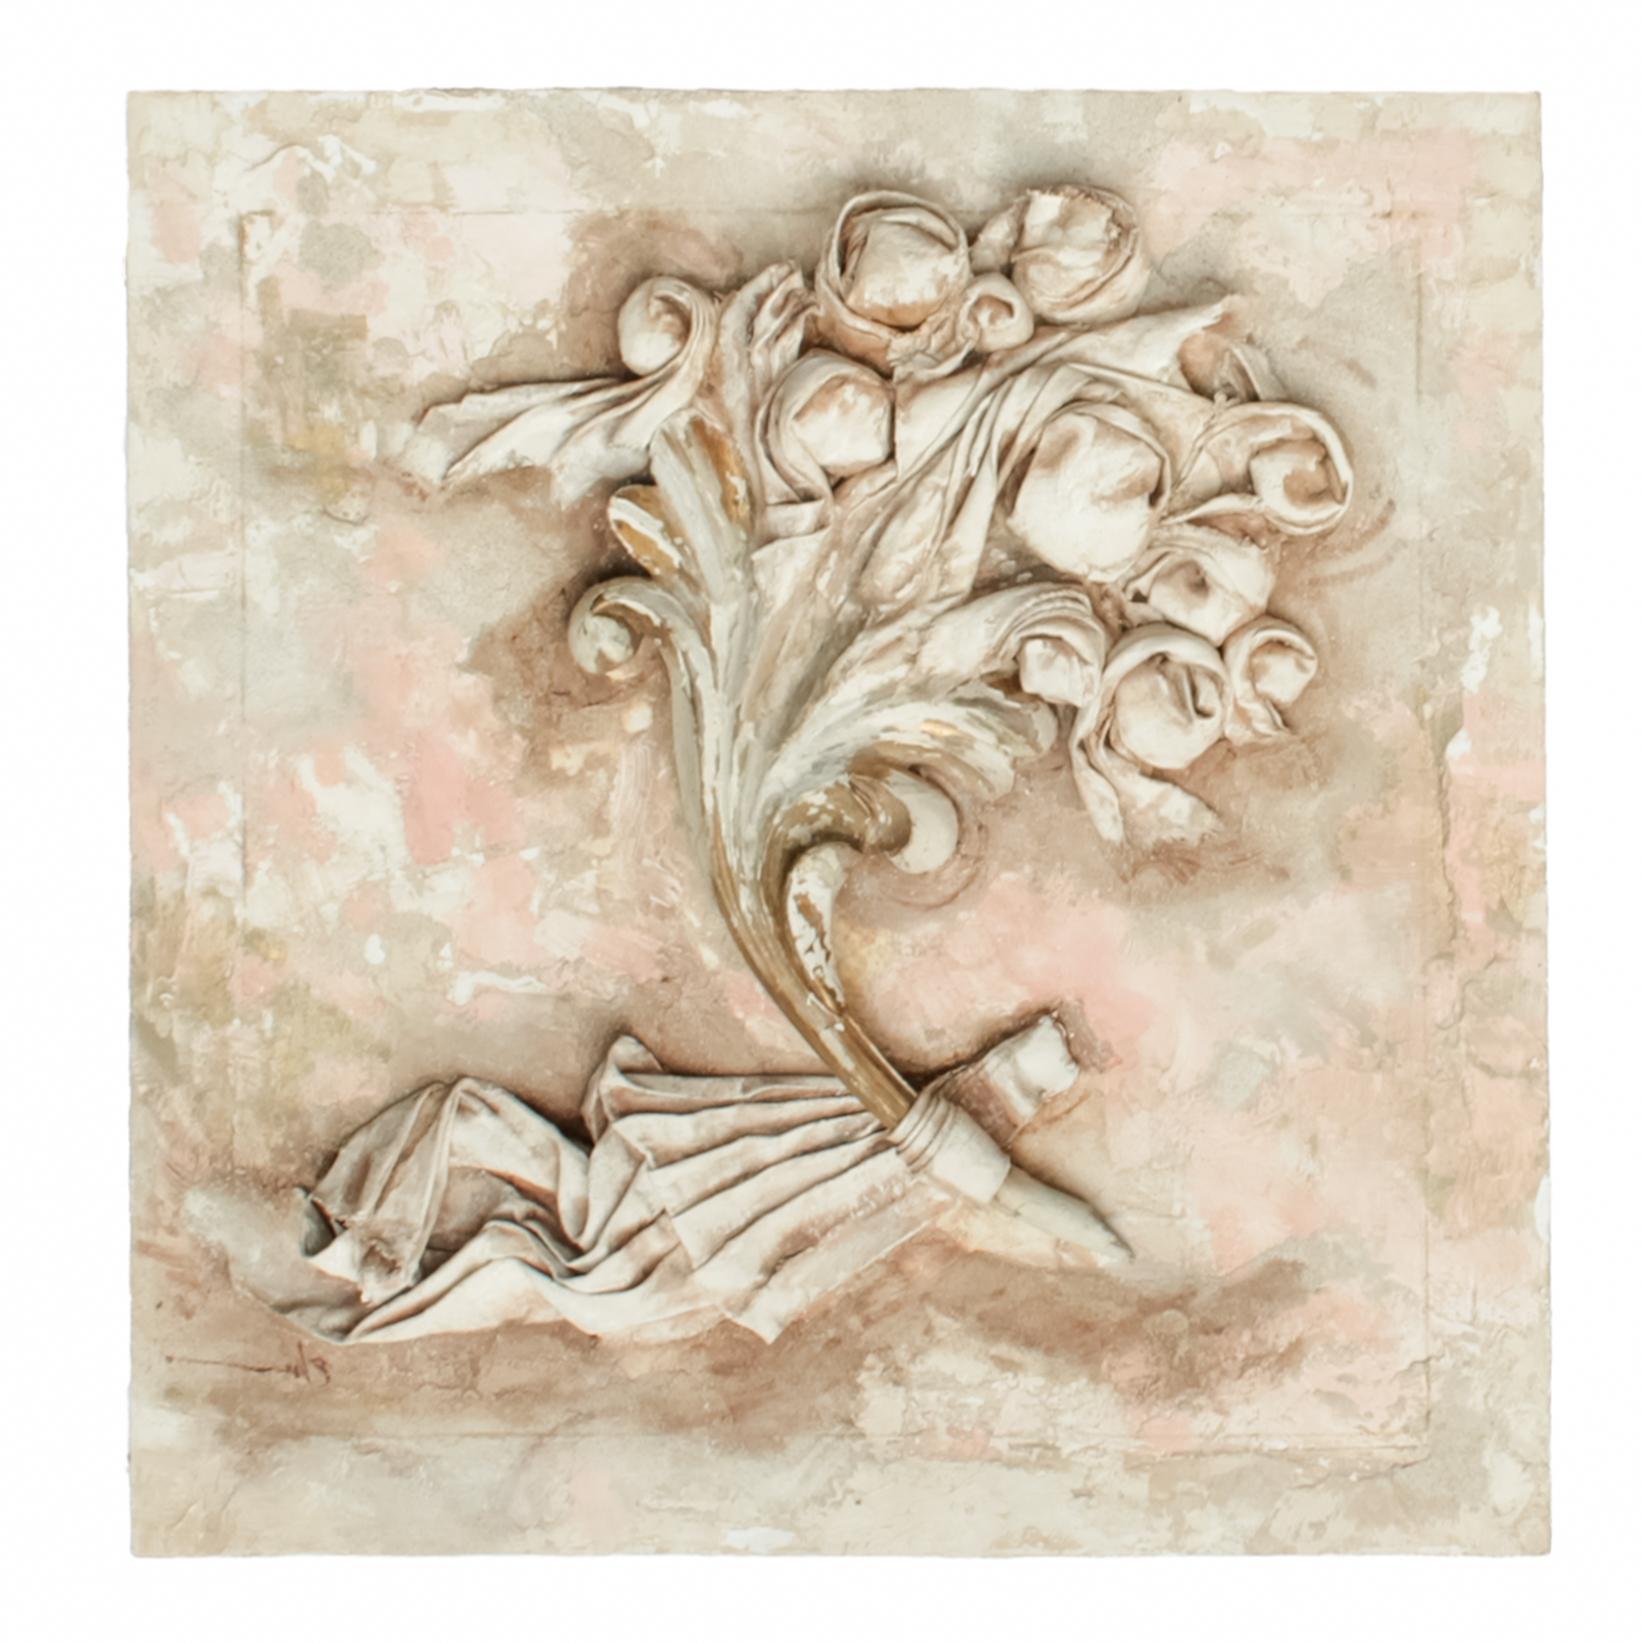 Ein passendes Paar italienische Fragmente aus dem 18. Jahrhundert mit Blattgold, Blumen aus Leinen, Gips, Öl, Wachs, Asche auf Holz, Glimmer und rosa Terrakottaöl.

Die originalen italienischen Fragmente aus dem 18. Jahrhundert werden mit den Blumen